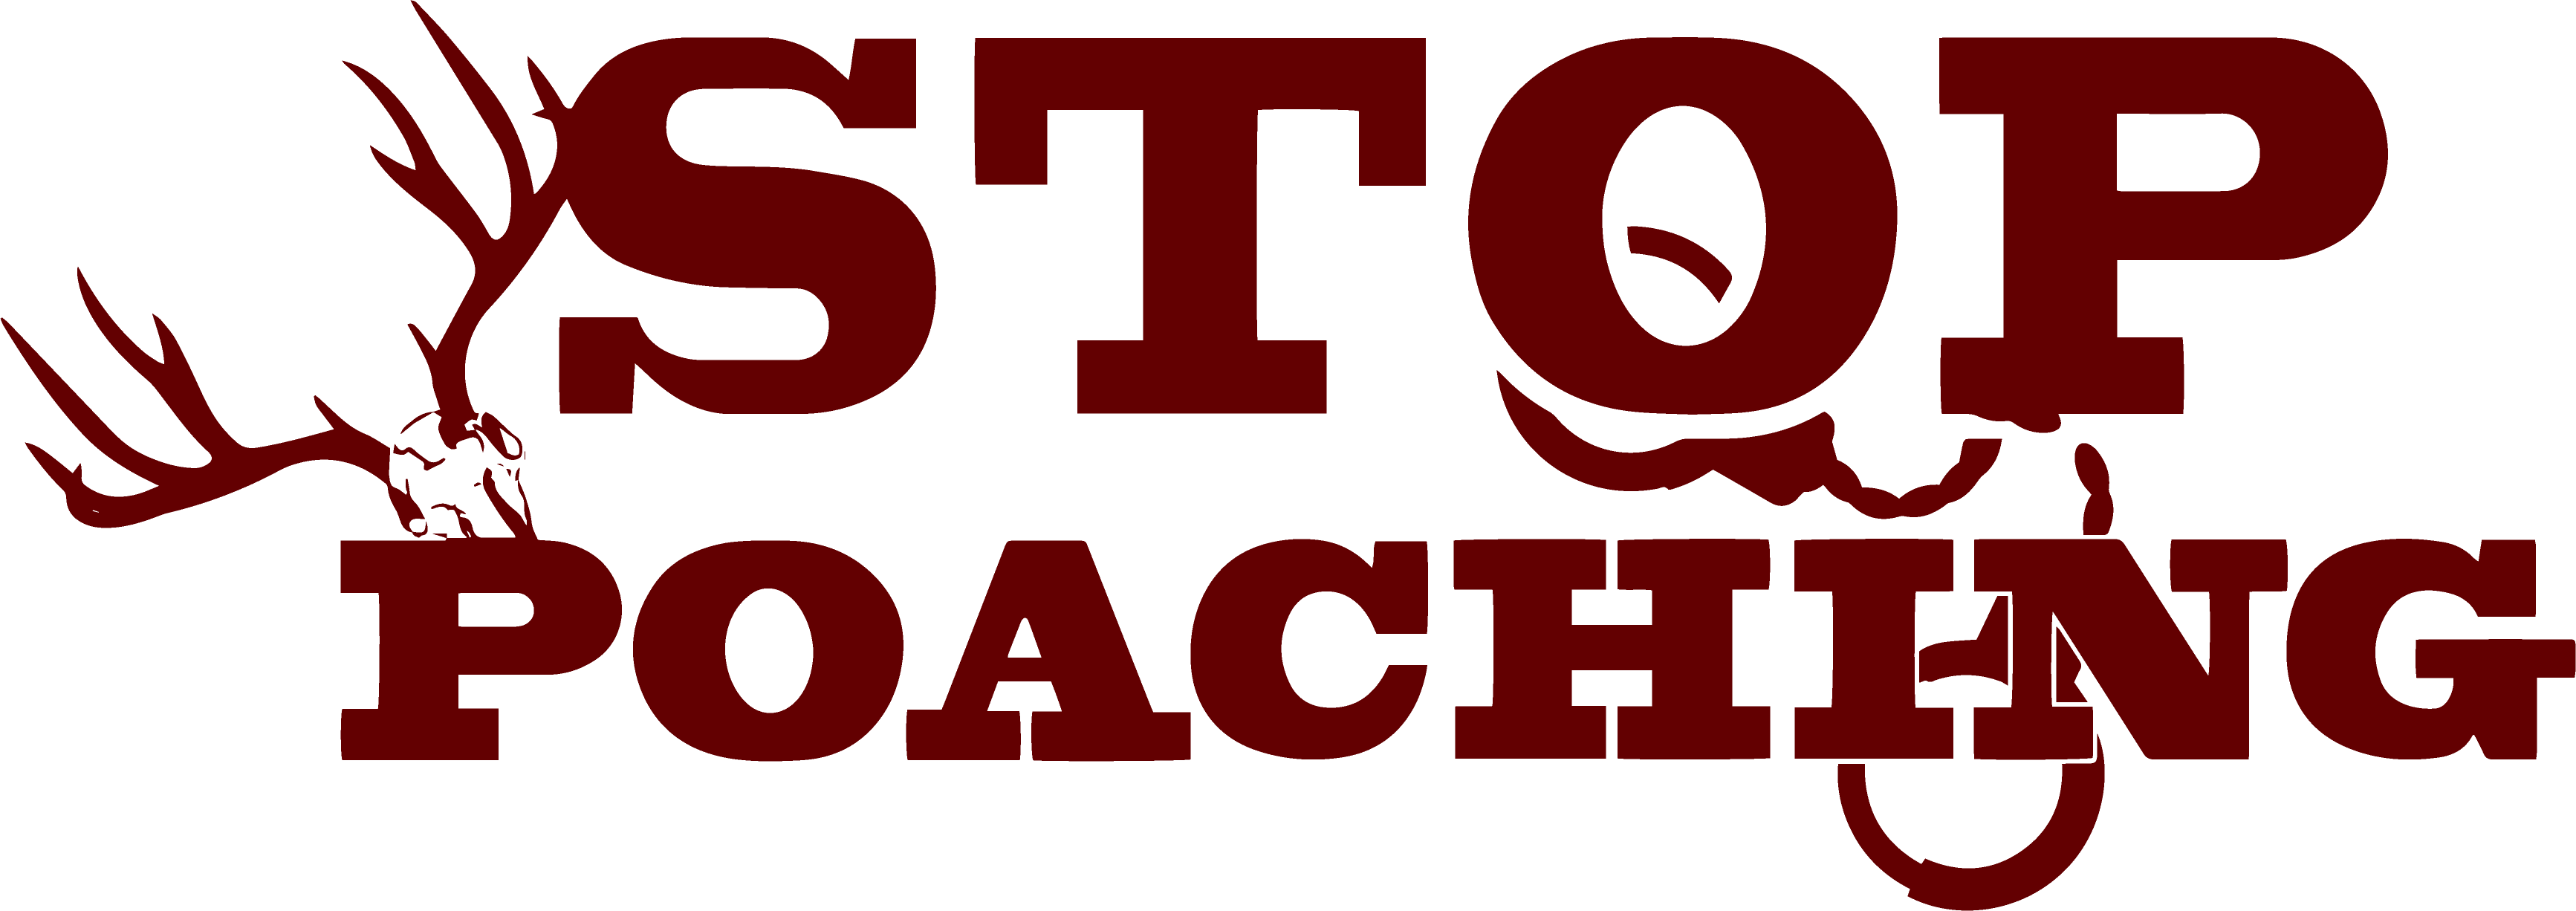 Stop Poaching logo - Red